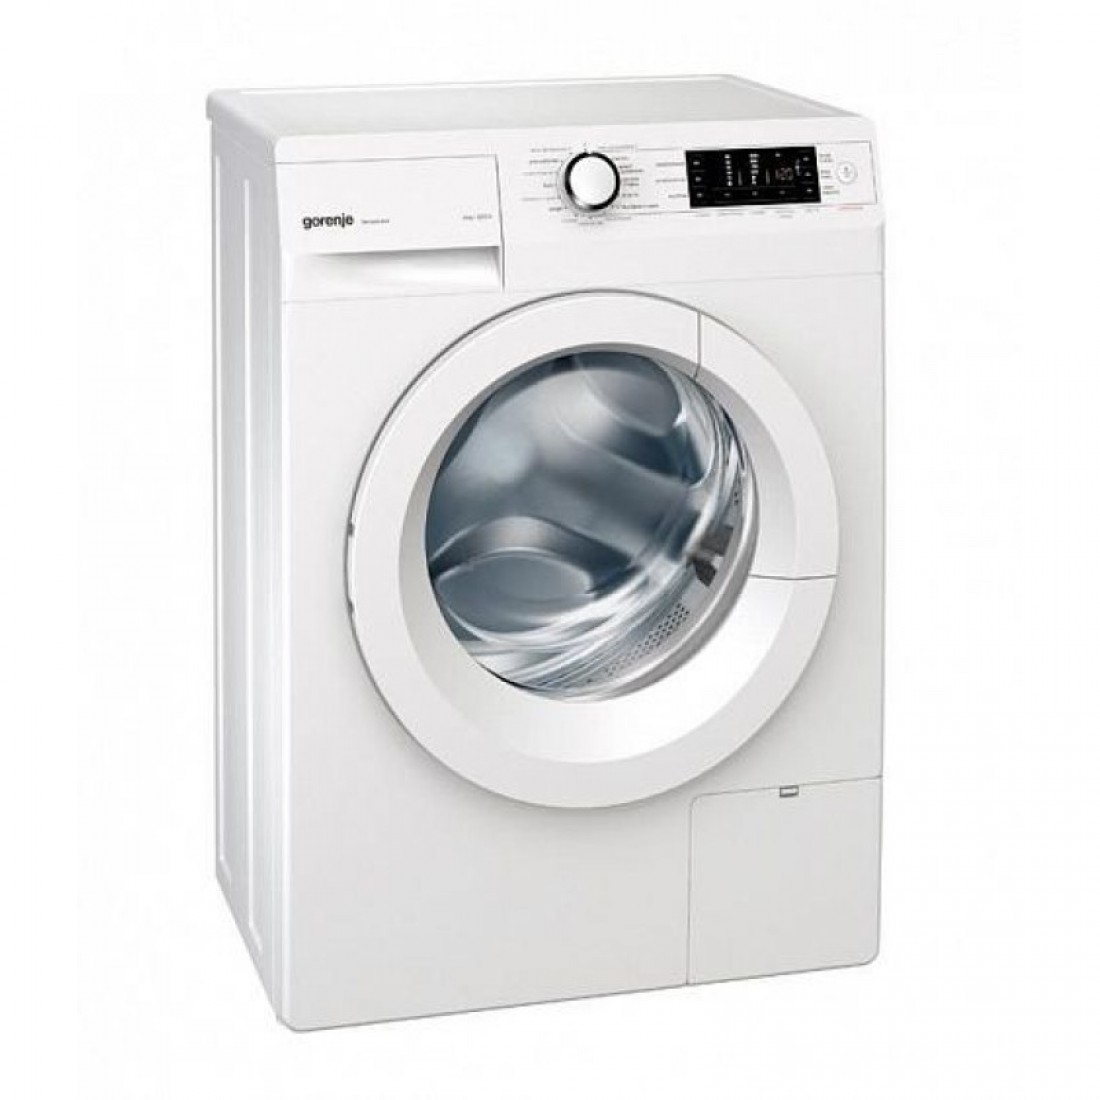 Недорогая качественная стиральная машина автомат отзывы